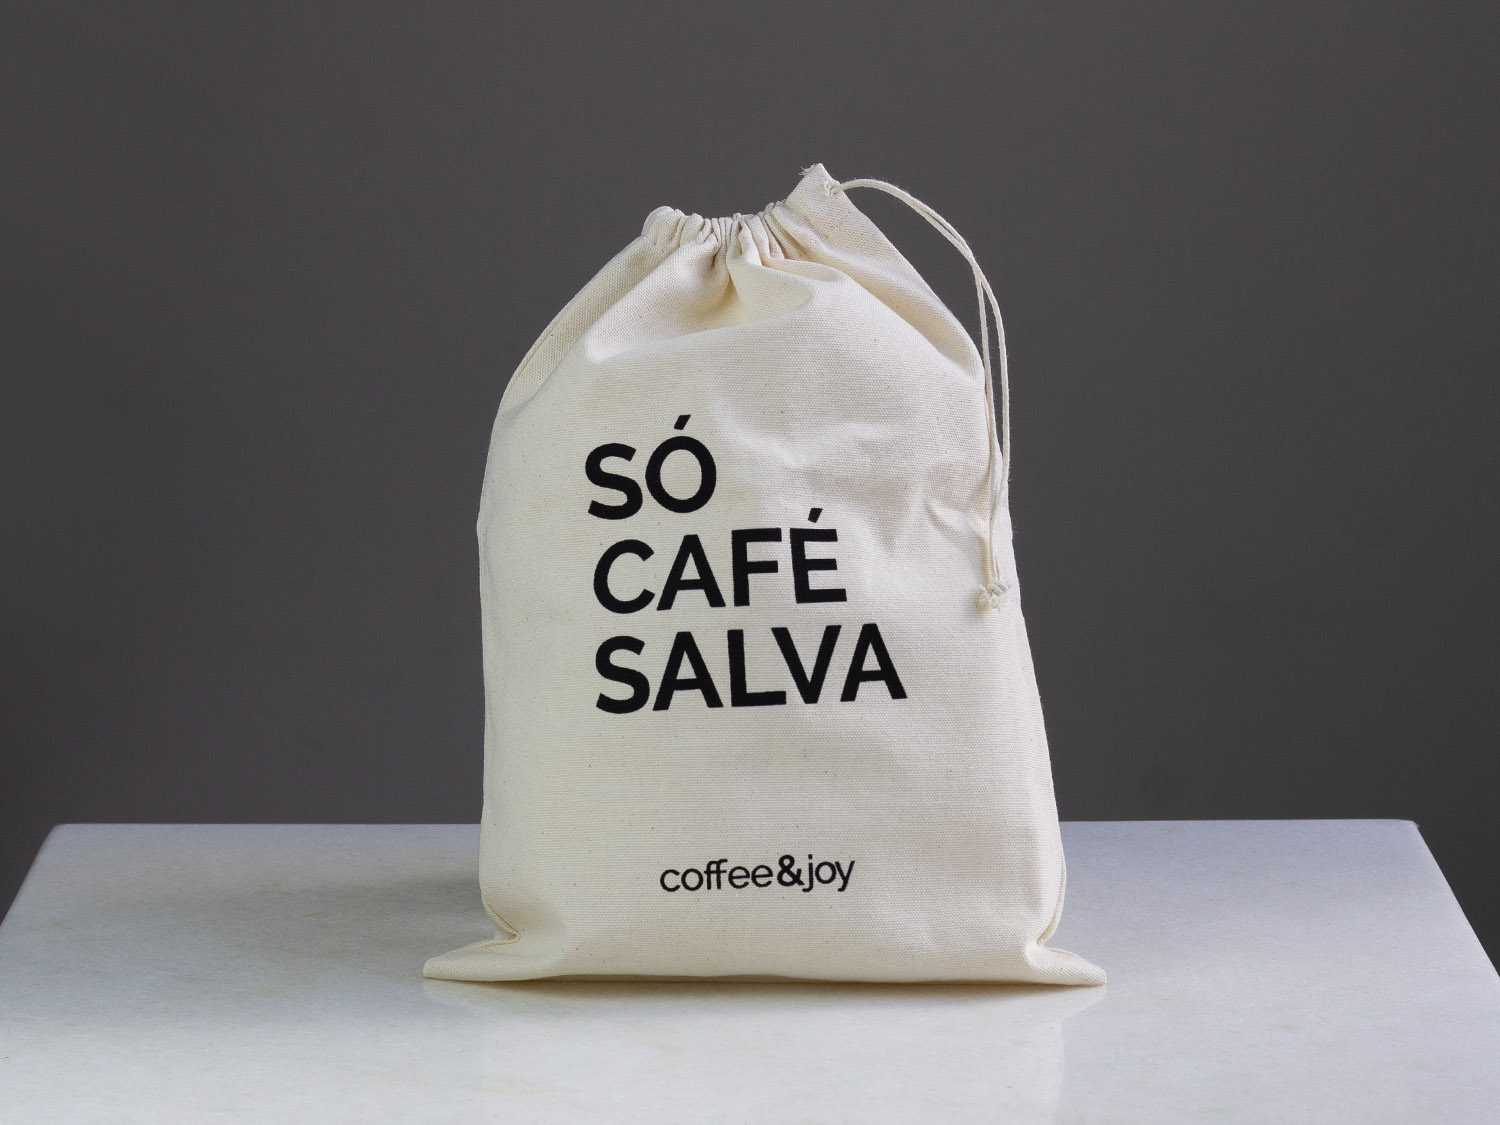 Coffeeandjoy eco bag so cafe salva